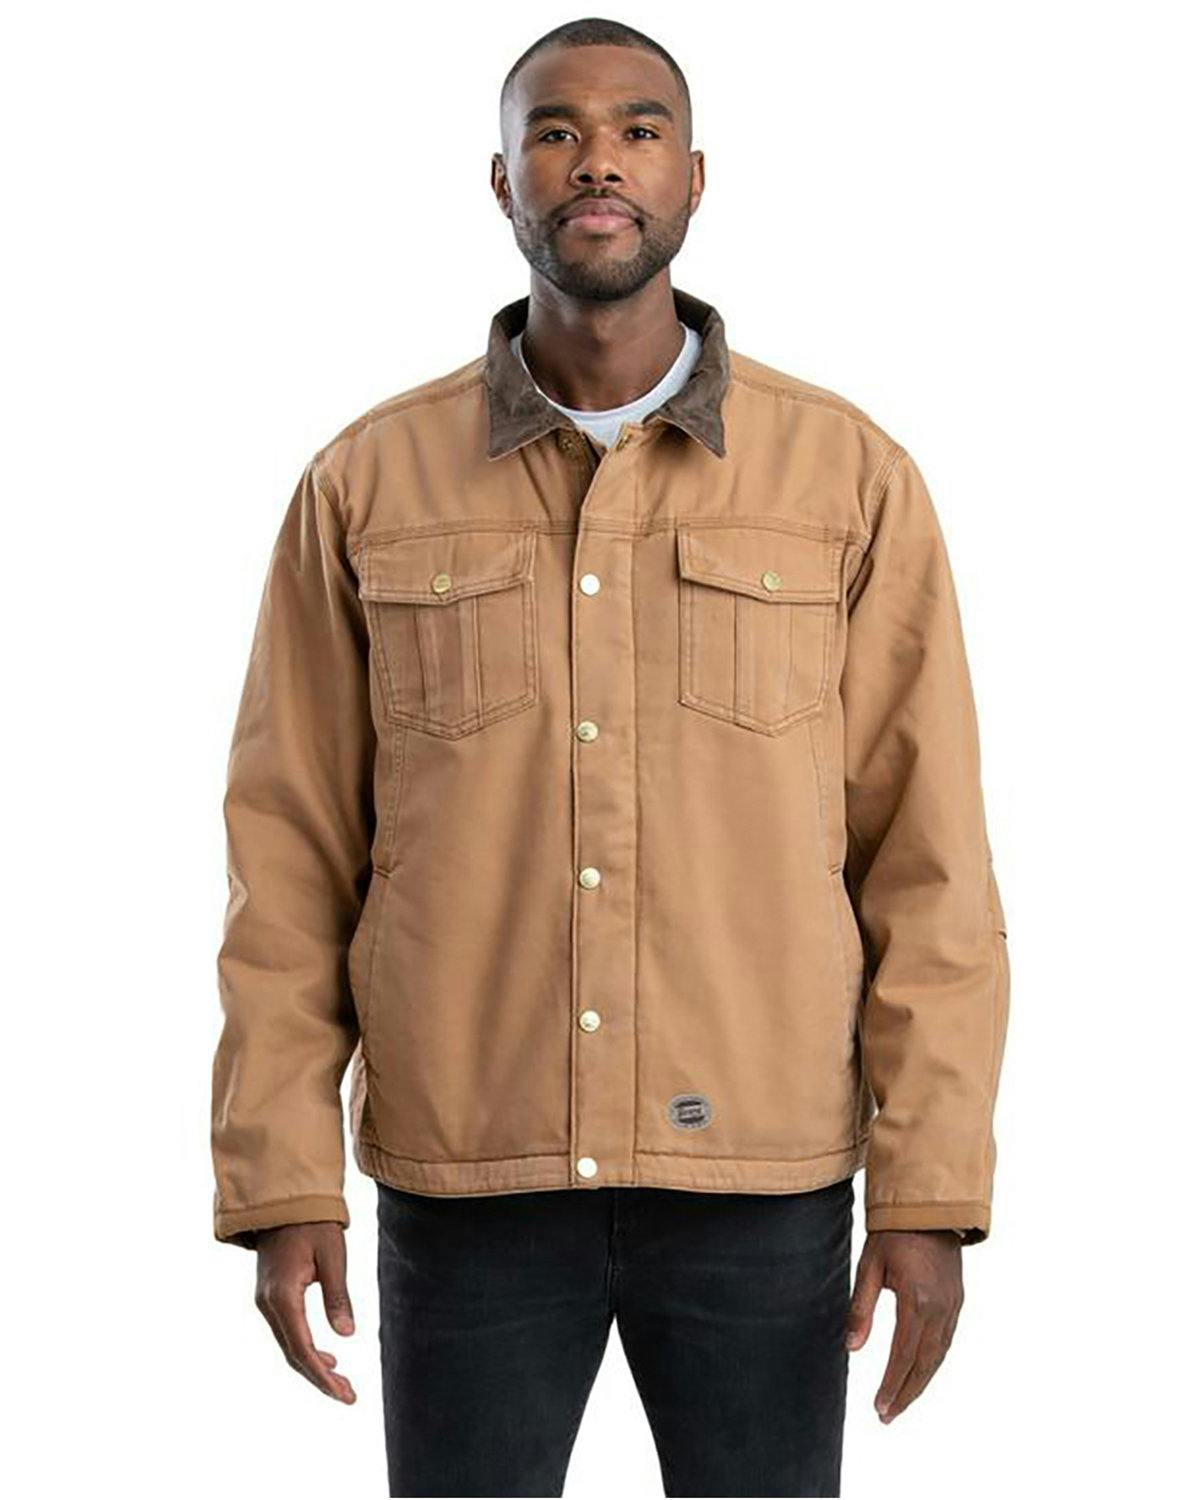 Image for Unisex Vintage Washed Sherpa-Lined Work Jacket